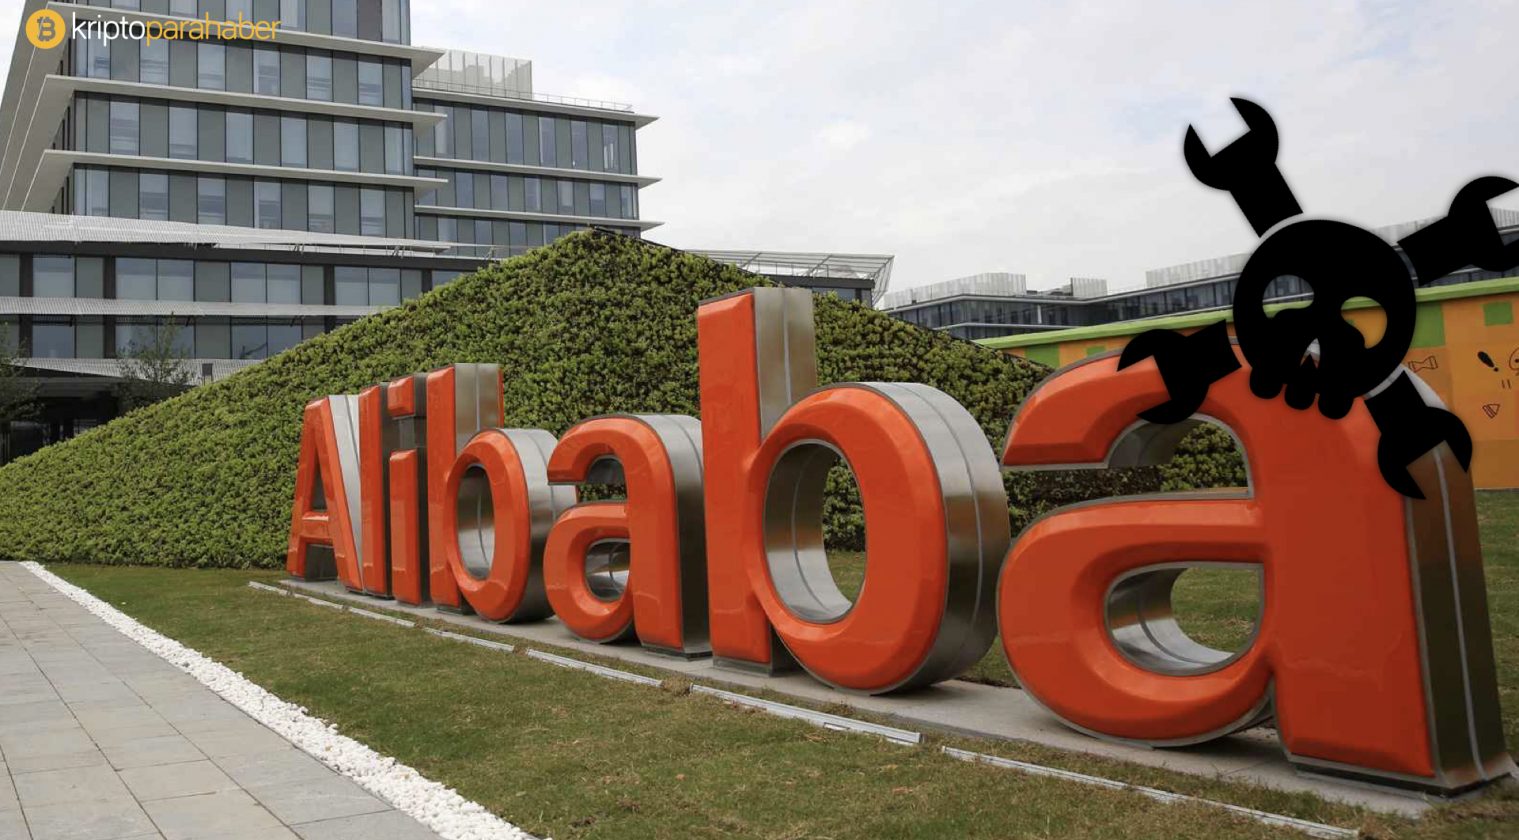 Bitcoin Cash ağına düzenlenen saldırının merkezi Alibaba olabilir.